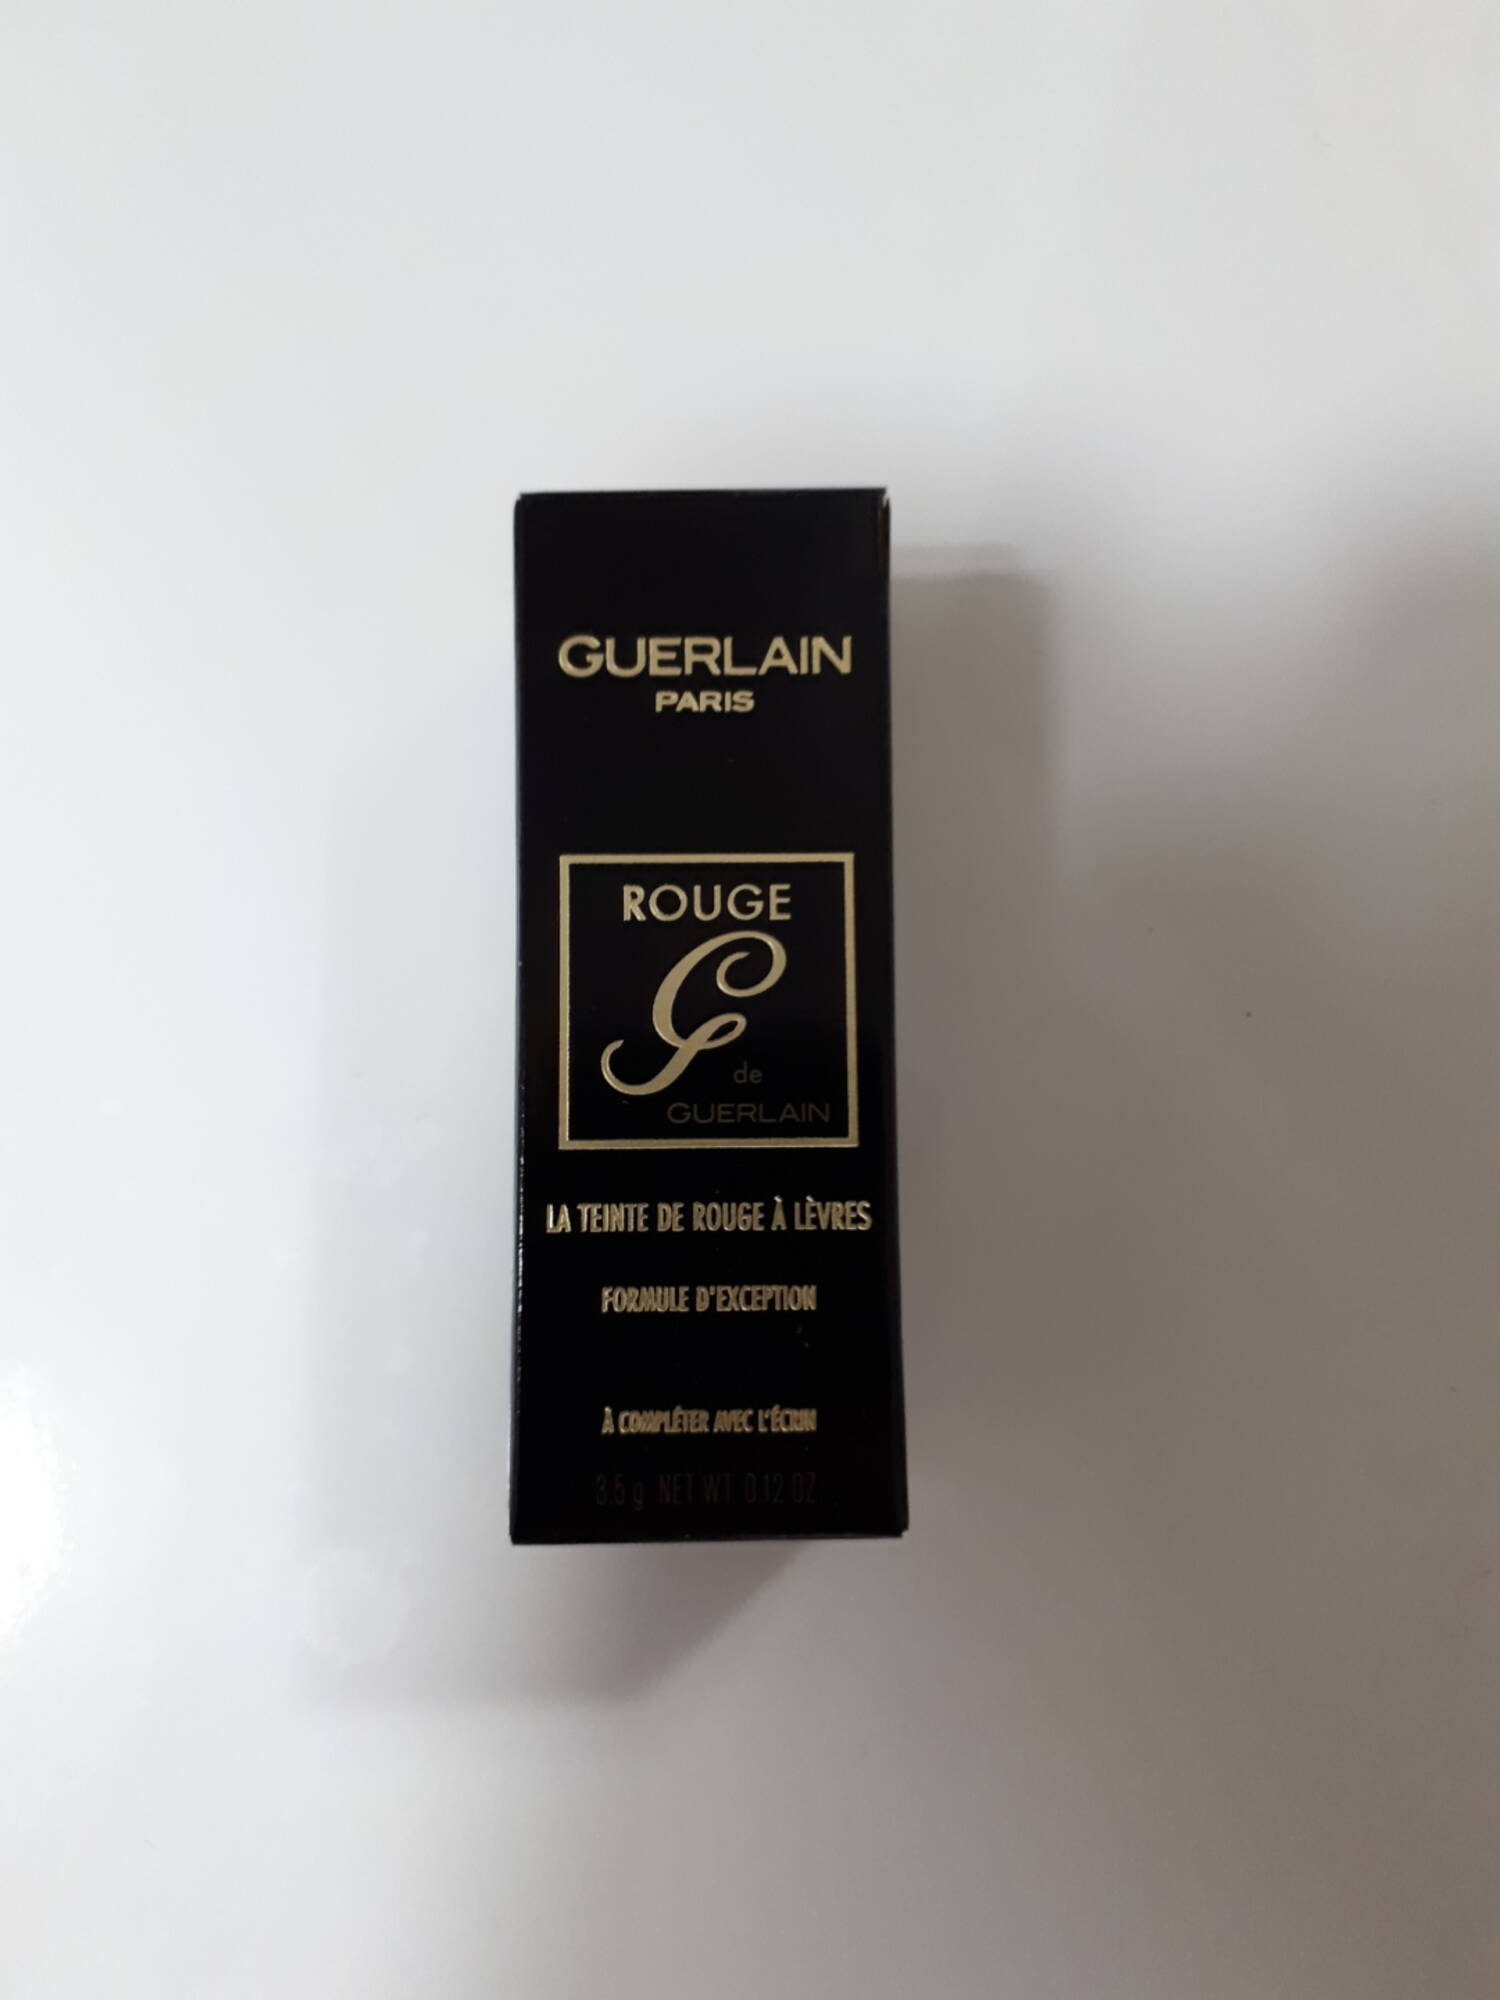 GUERLAIN - Rouge de Guerlain - La teinte de rouge à lèvres